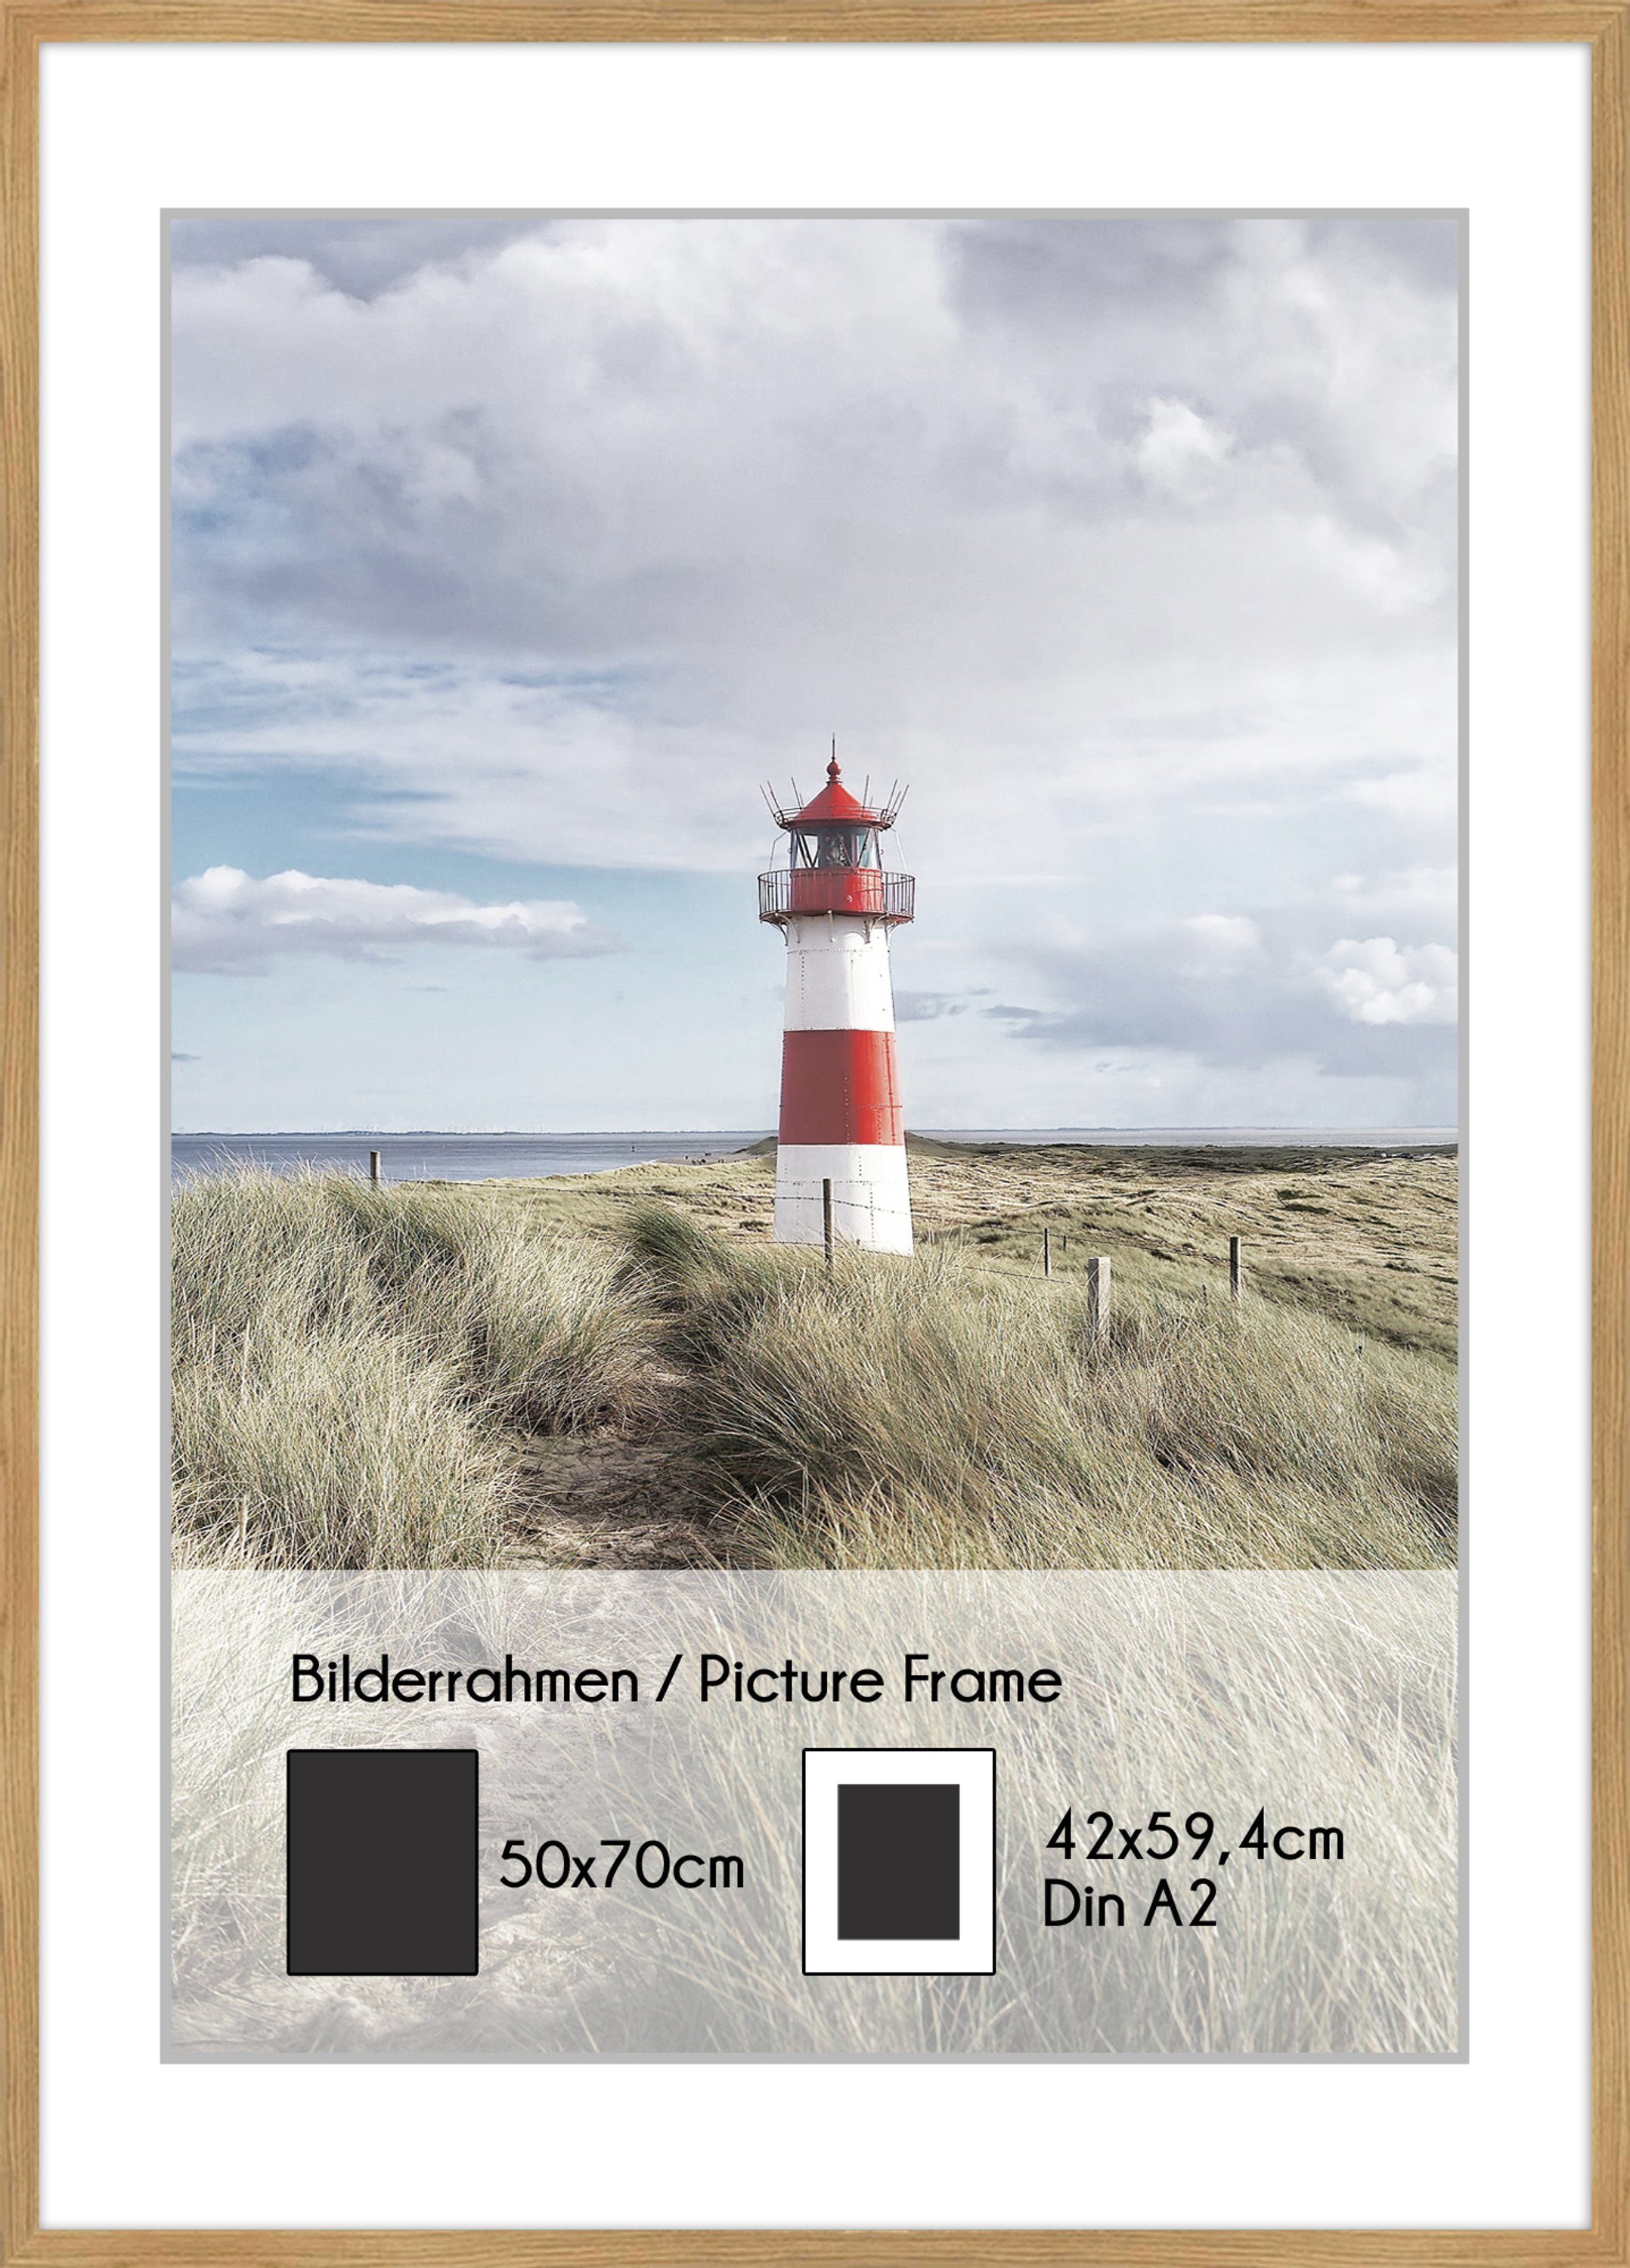 inkl. für Holz Bilderrahmen artissimo Eiche DinA2 Poster Bilder.Rahmen Passepartout 50x70cm